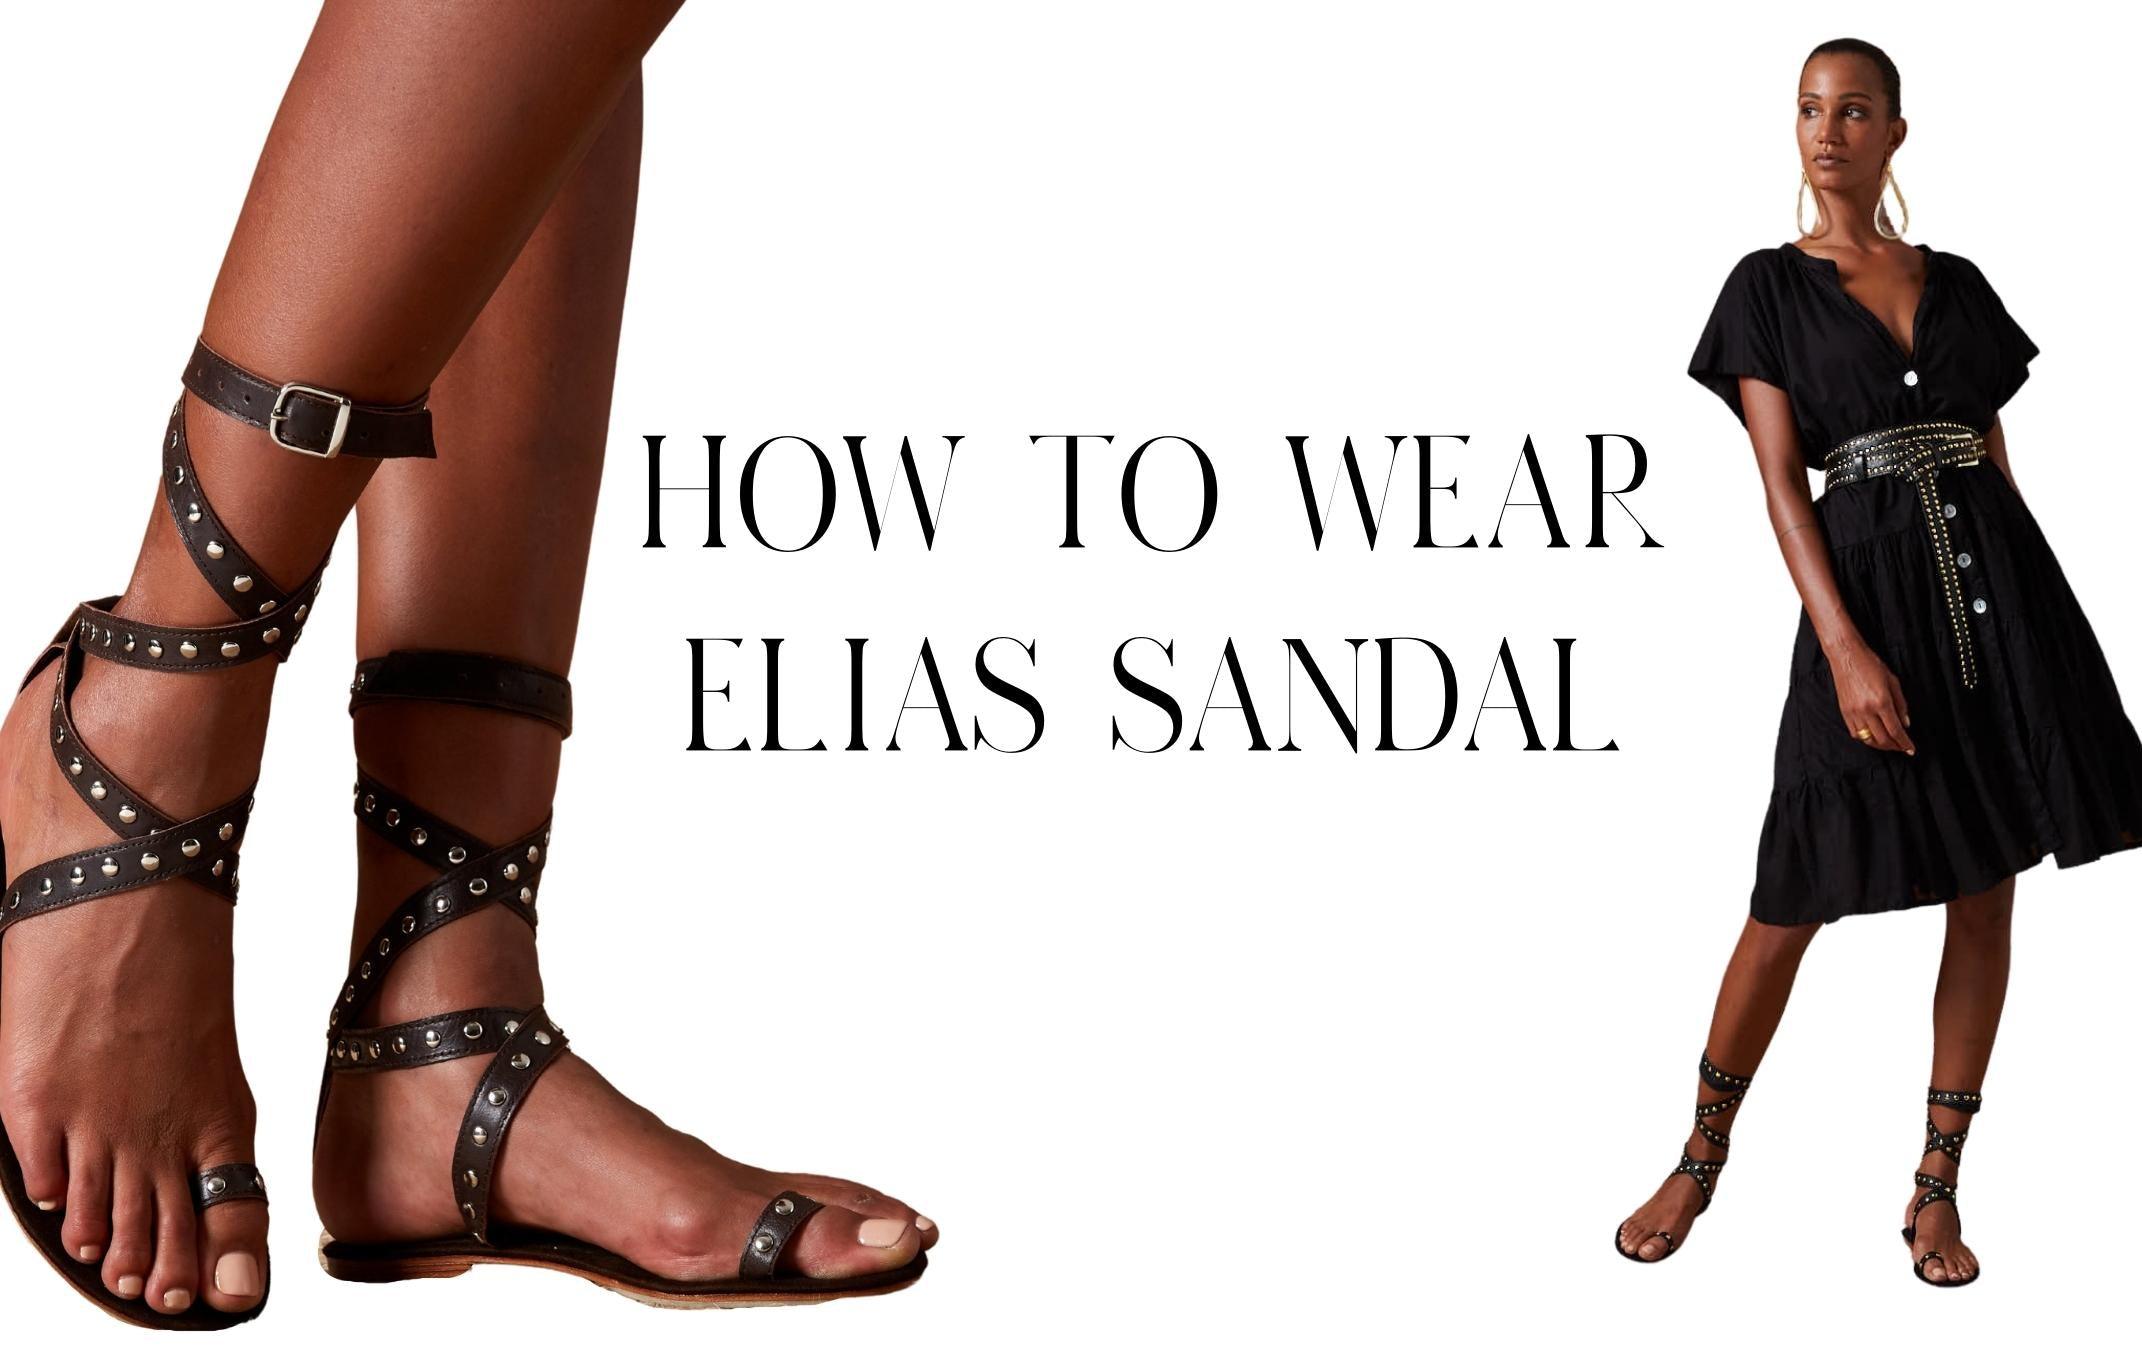 HOW TO WEAR ELIAS SANDALS - Erika Peña